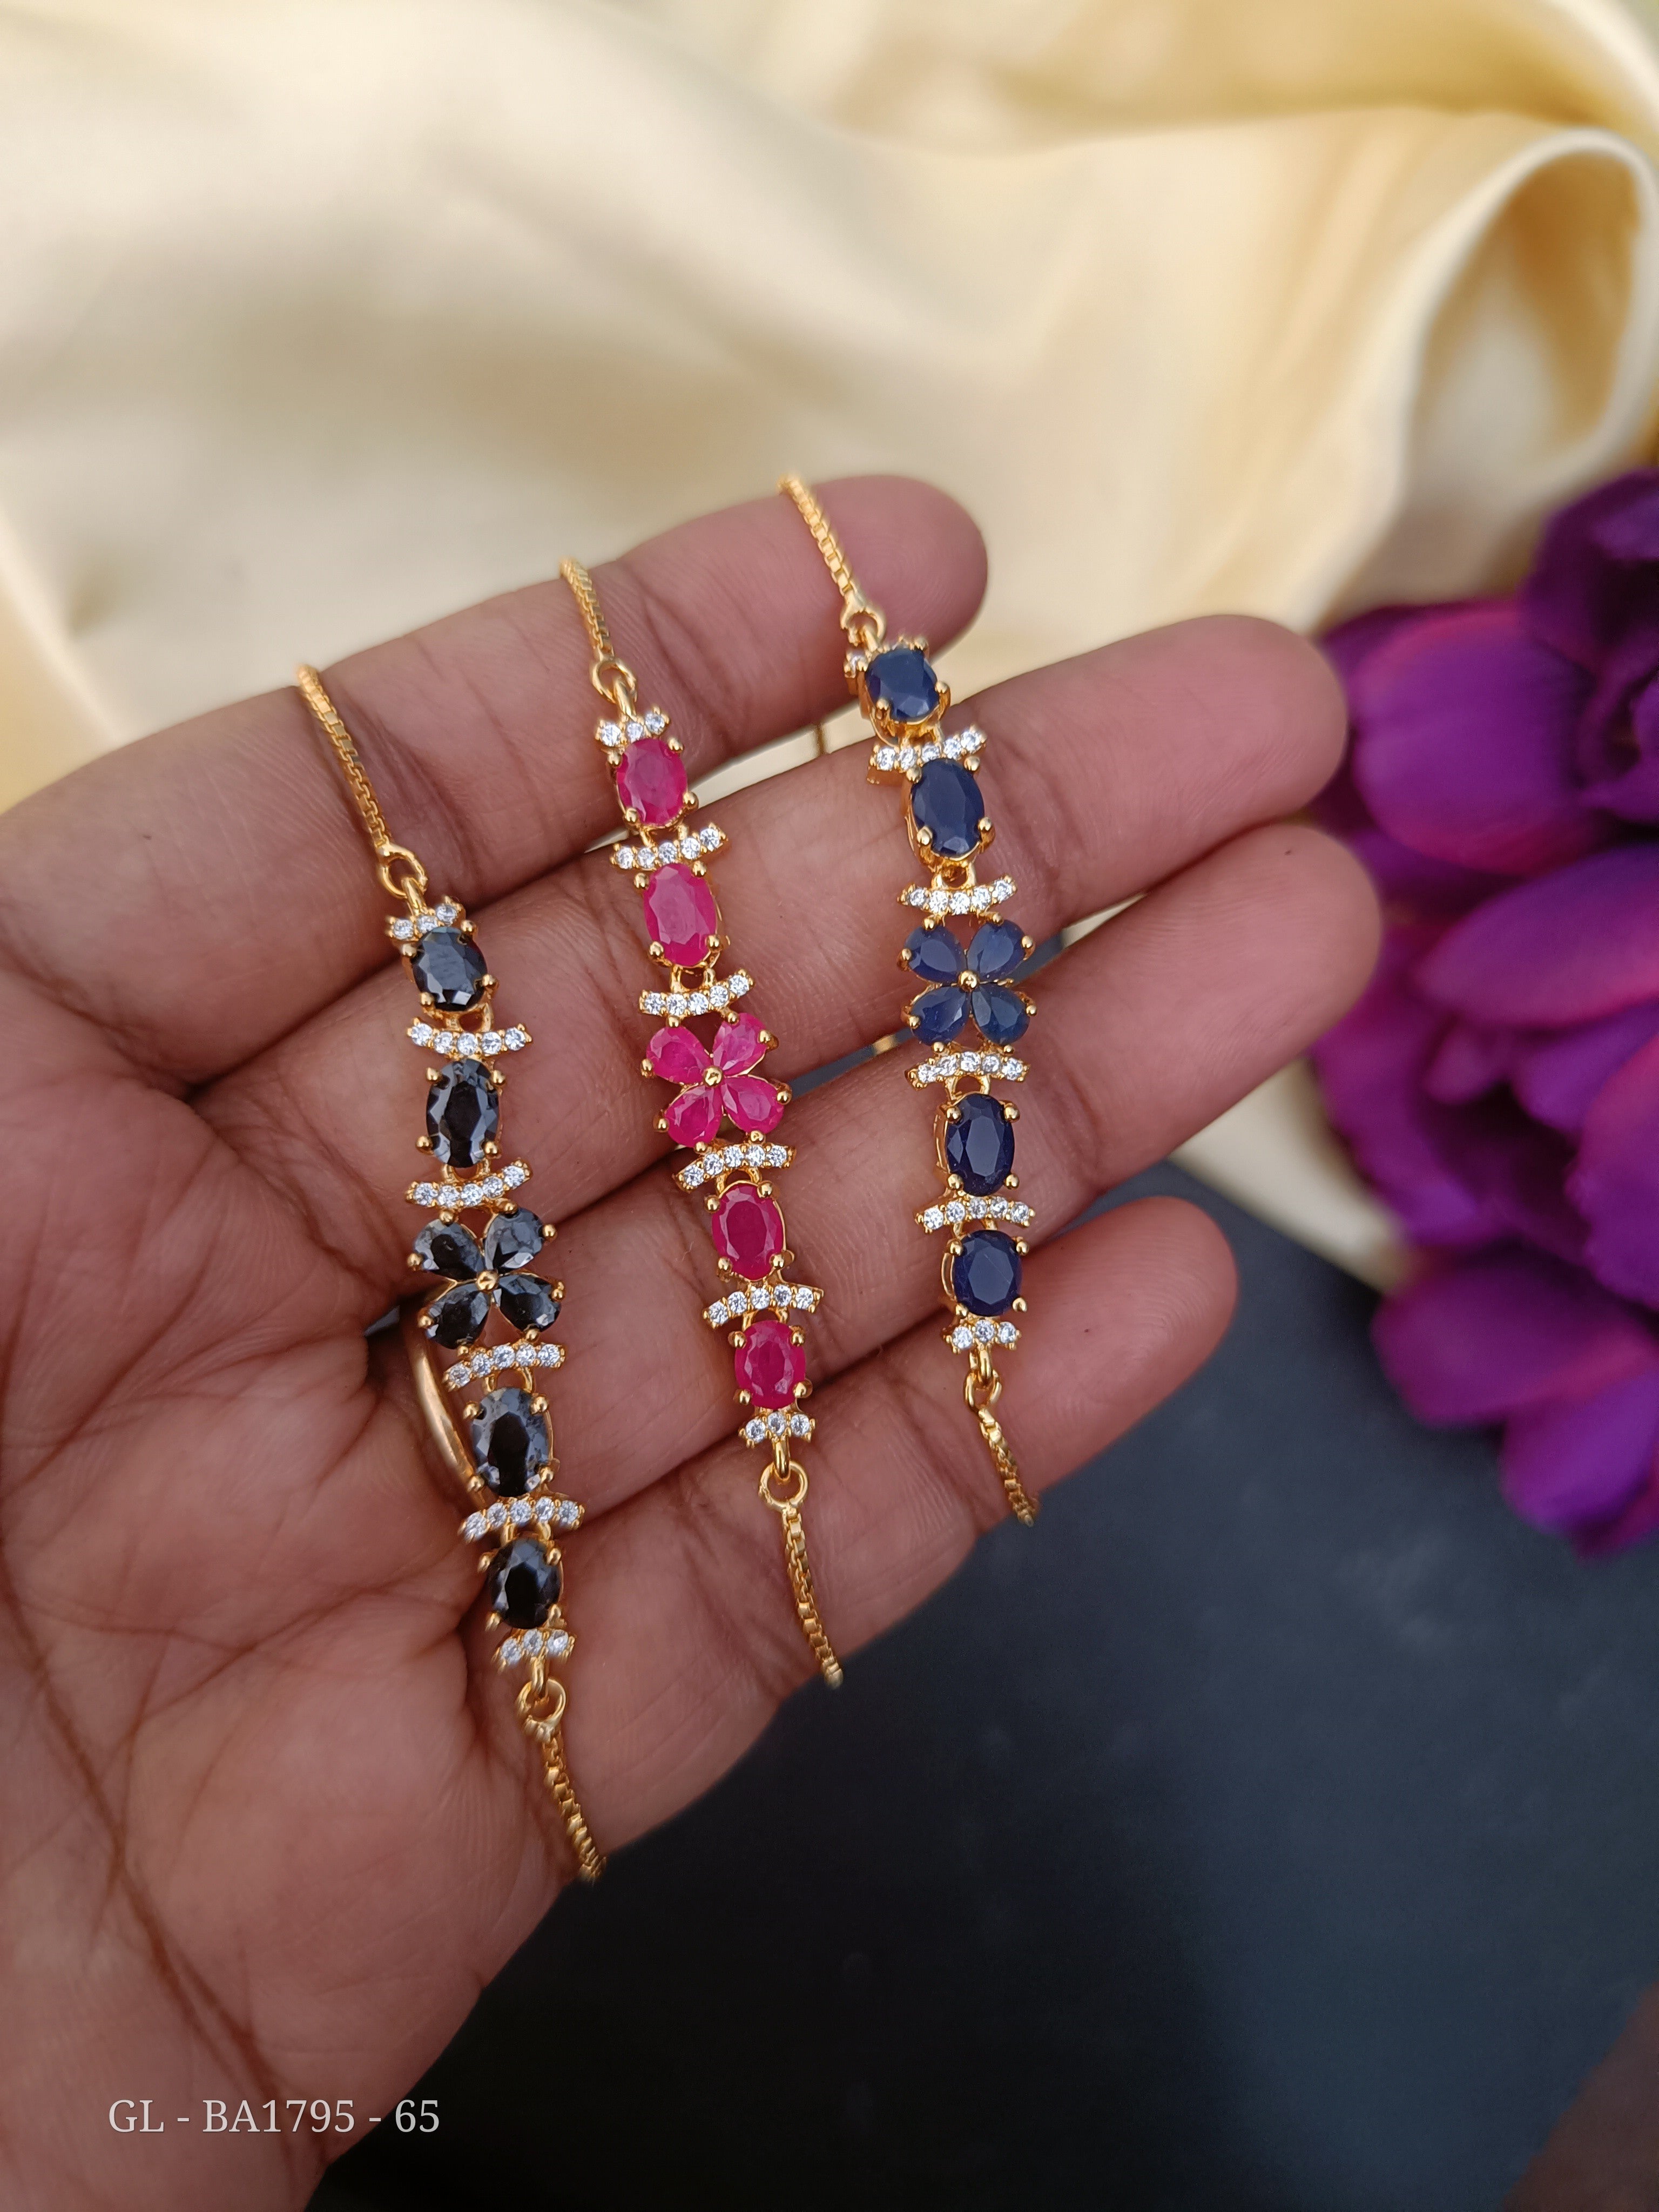 Nafisa Designs - Elegant Ruby Bracelet Gemstones: Ruby... | Facebook